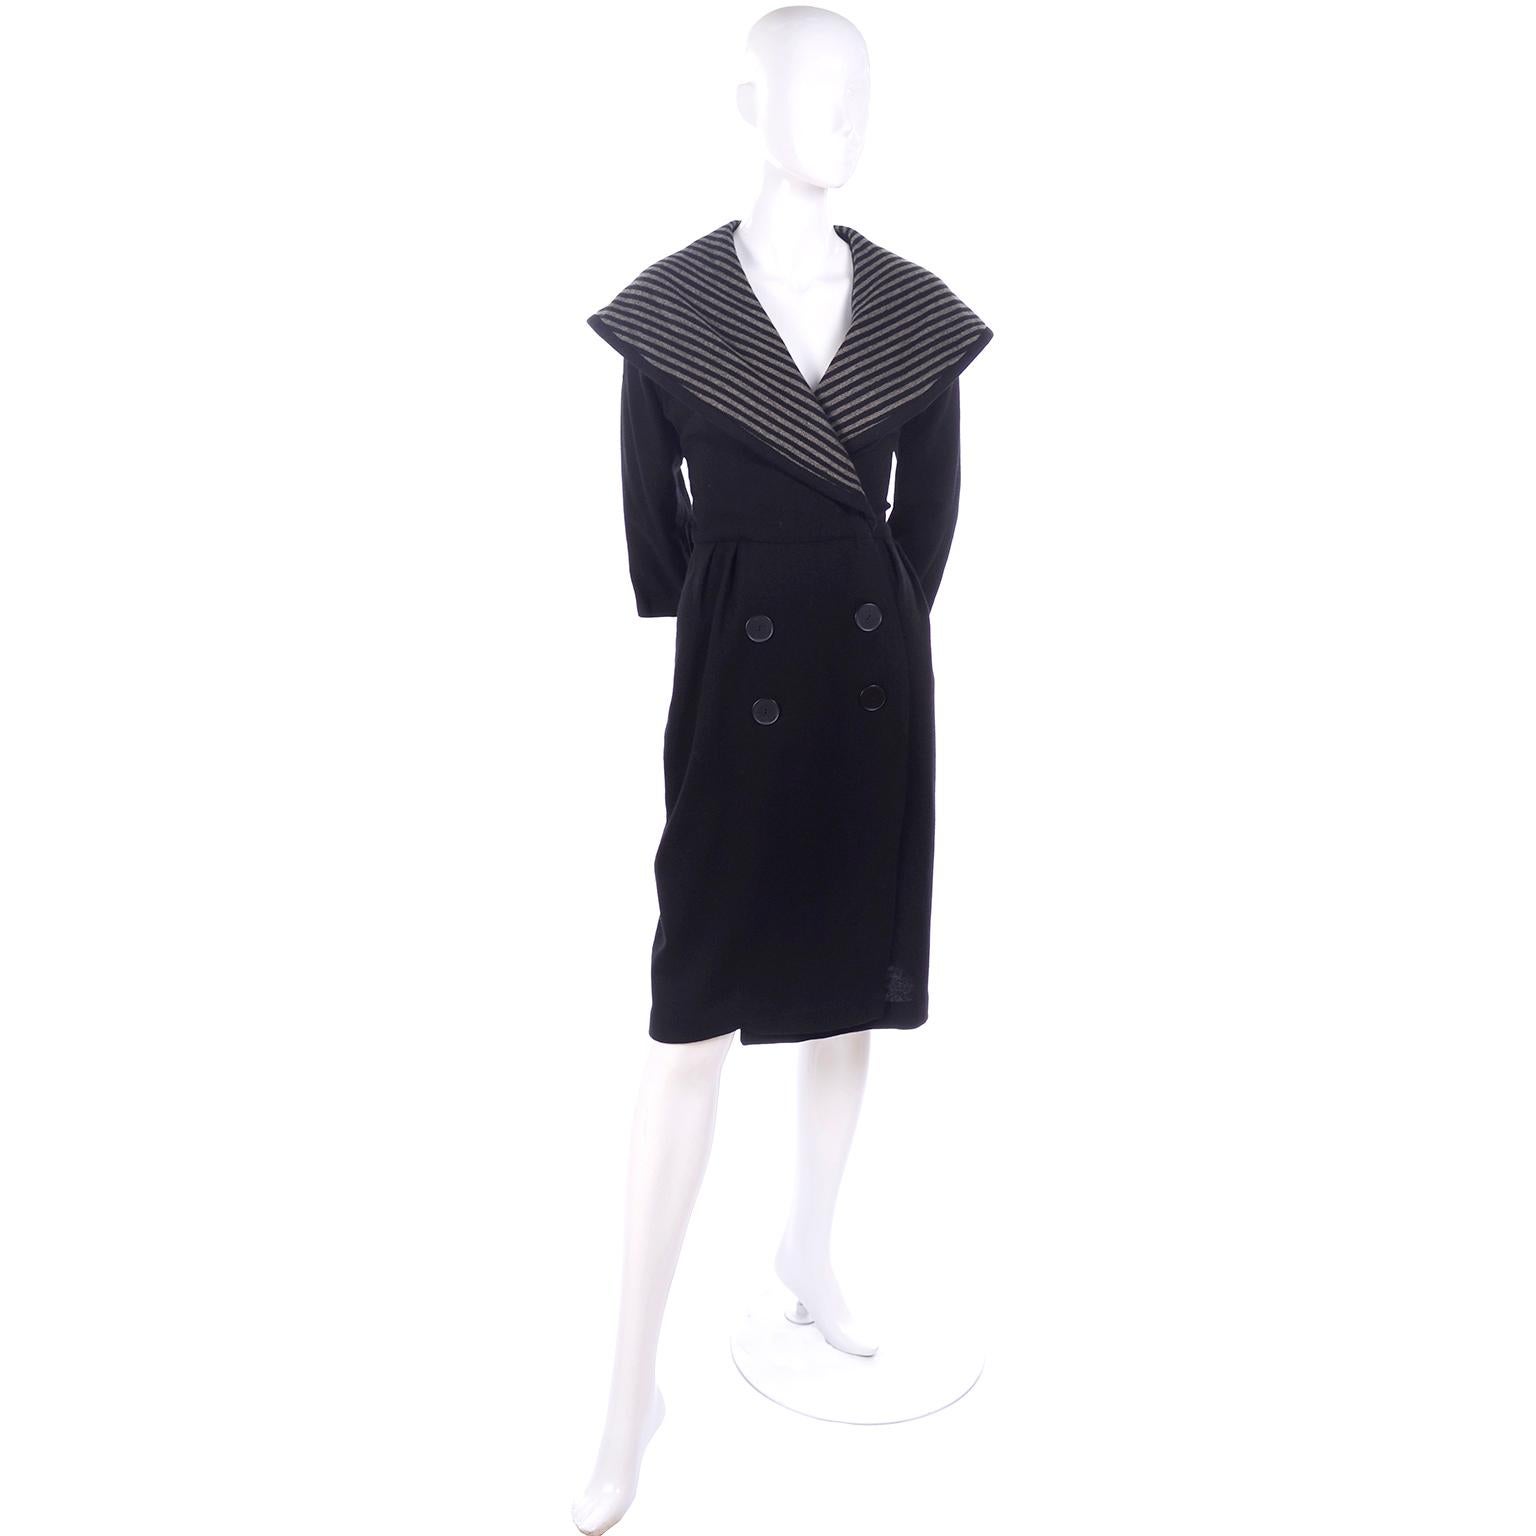 Dies ist ein sehr schöner schwarzer Wollmantel aus der ersten Hälfte des 20. Jahrhunderts.  Der Mantel hat 3/4-Ärmel, wird mit Haken und Ösen geschlossen und hat Zierknöpfe auf der Vorderseite. Der Kragen im Matrosenstil ist mit grauen und schwarzen